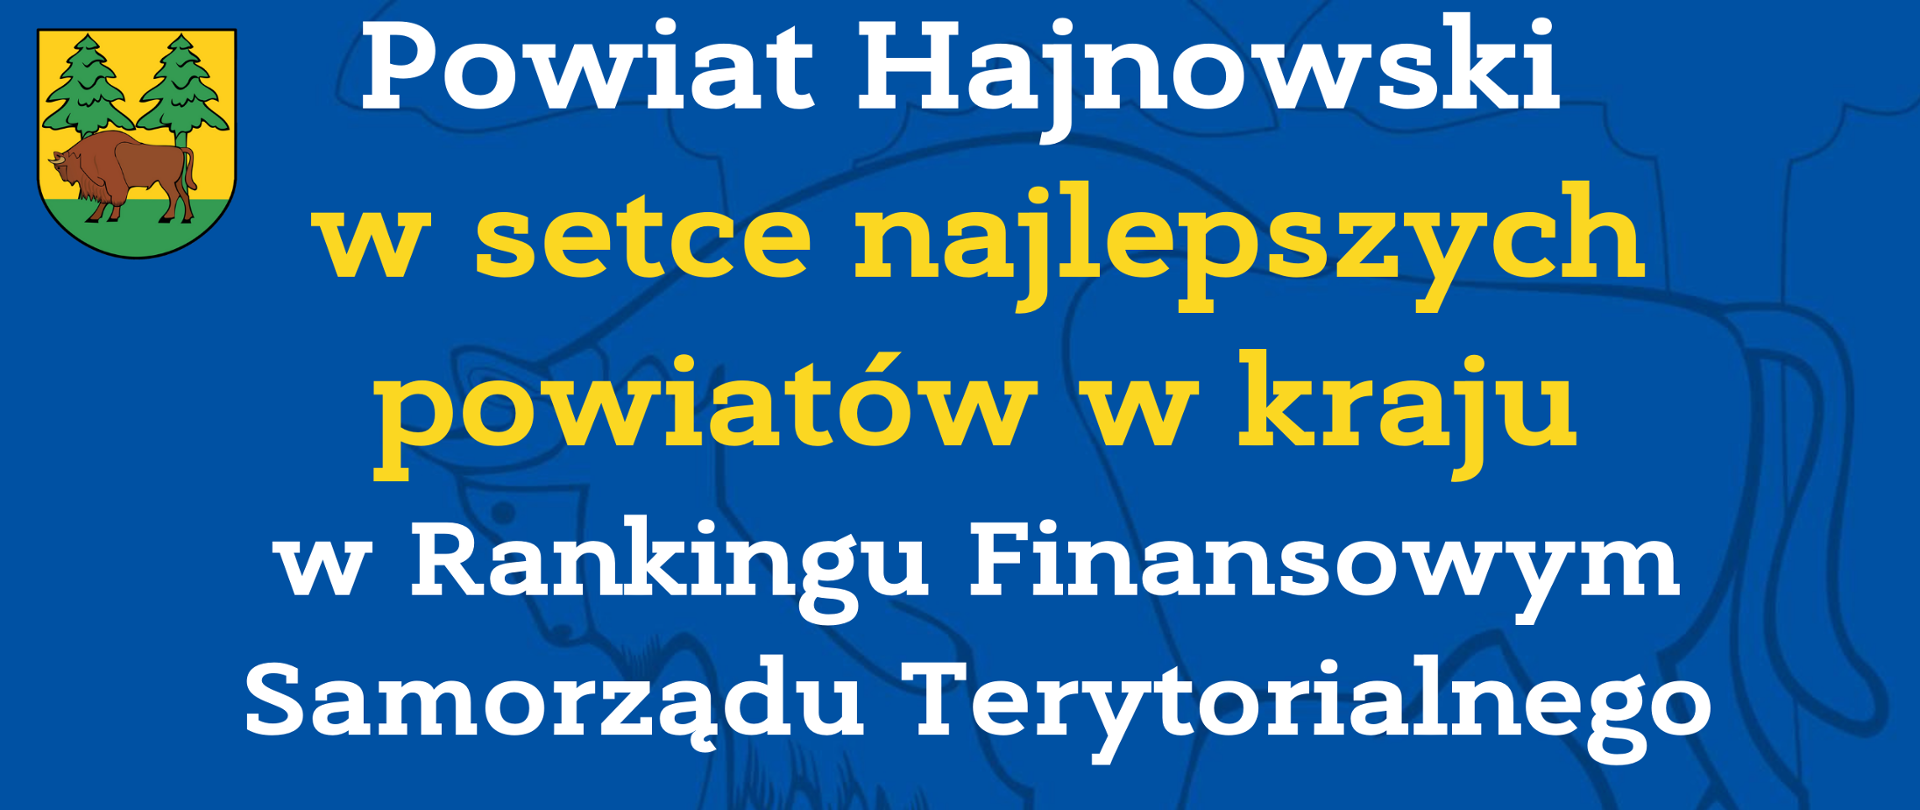 Powiat Hajnowski w setce najlepszych powiatów w kraju w Rankingu Finansowym Samorządu Terytorialnego